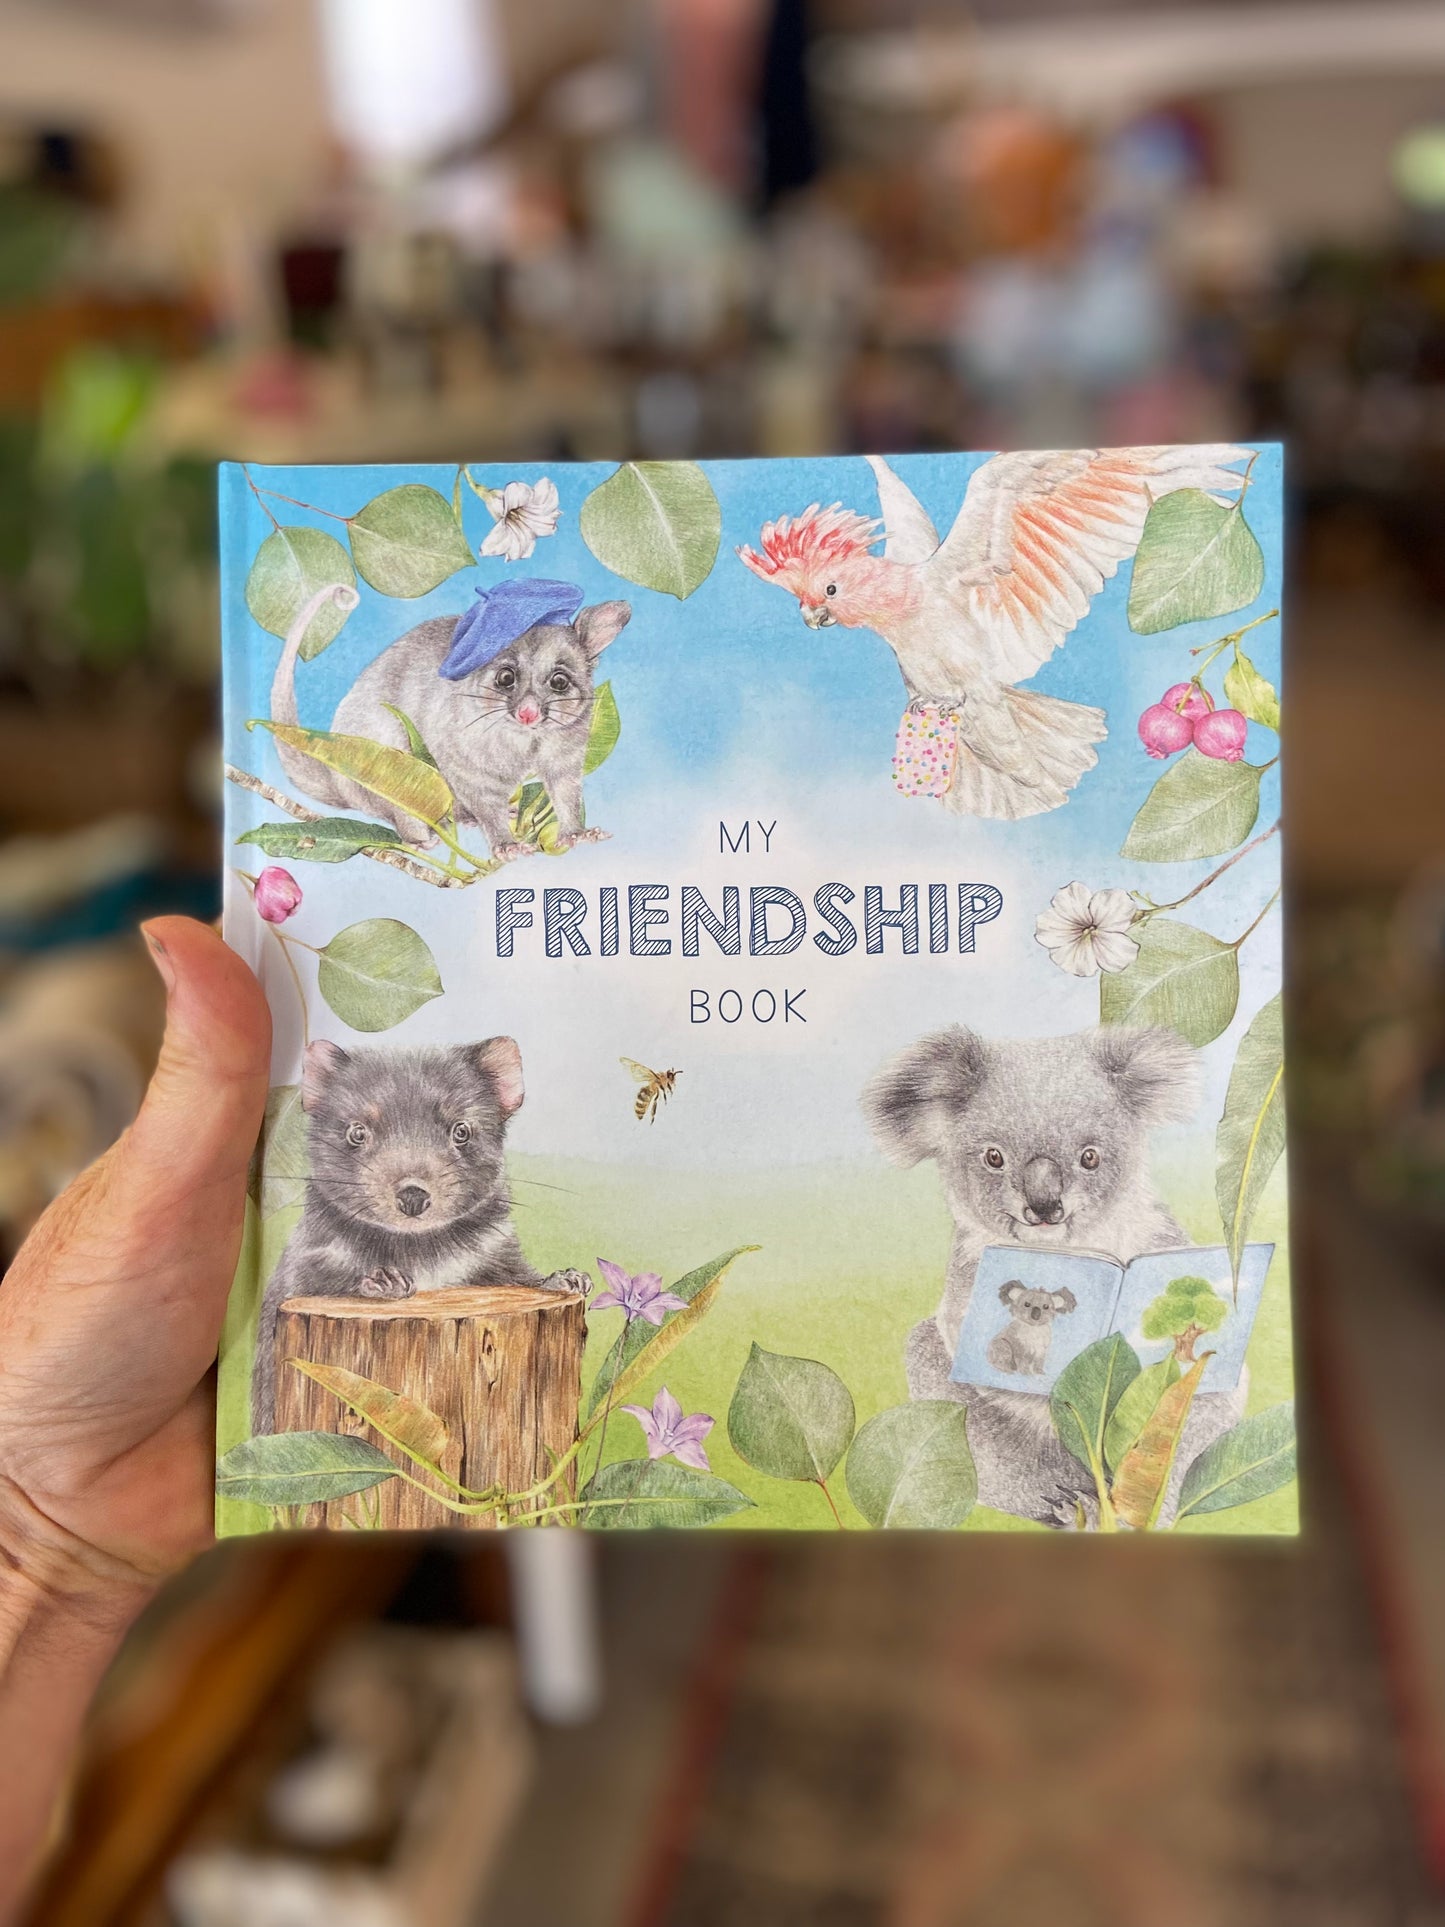 My Friendship Book